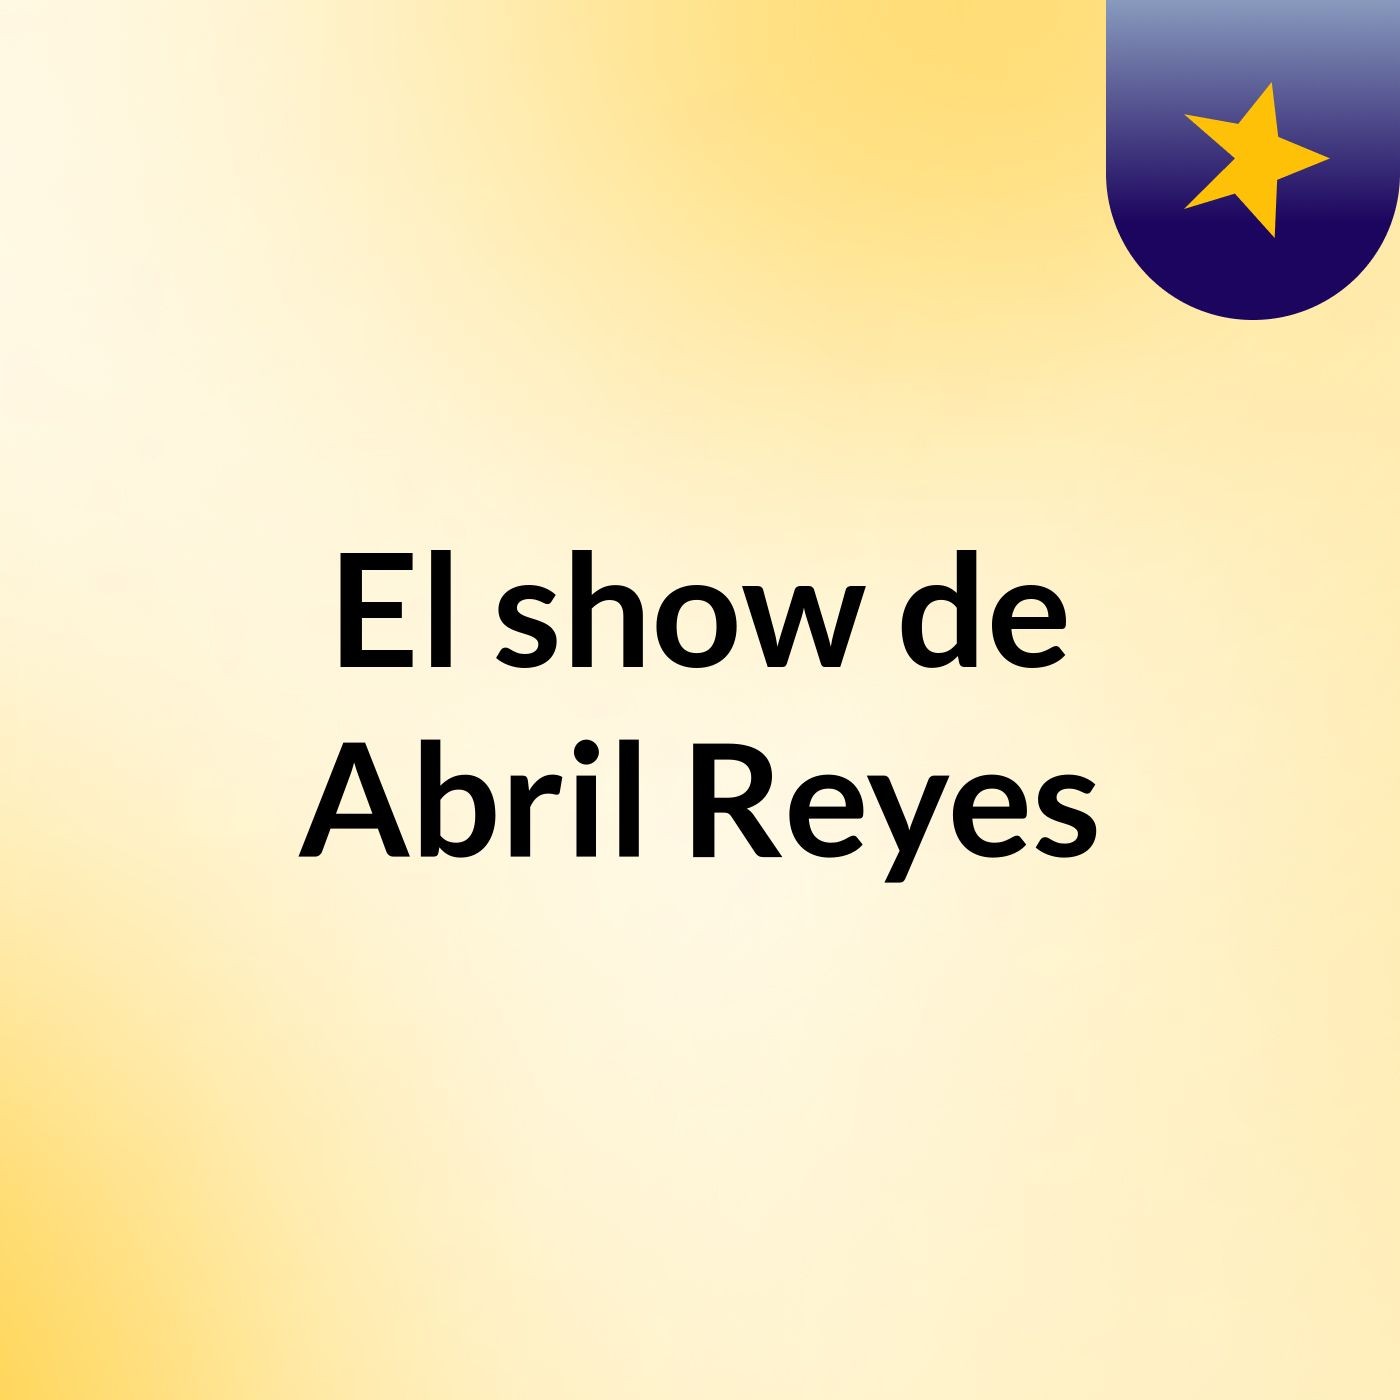 El show de Abril Reyes